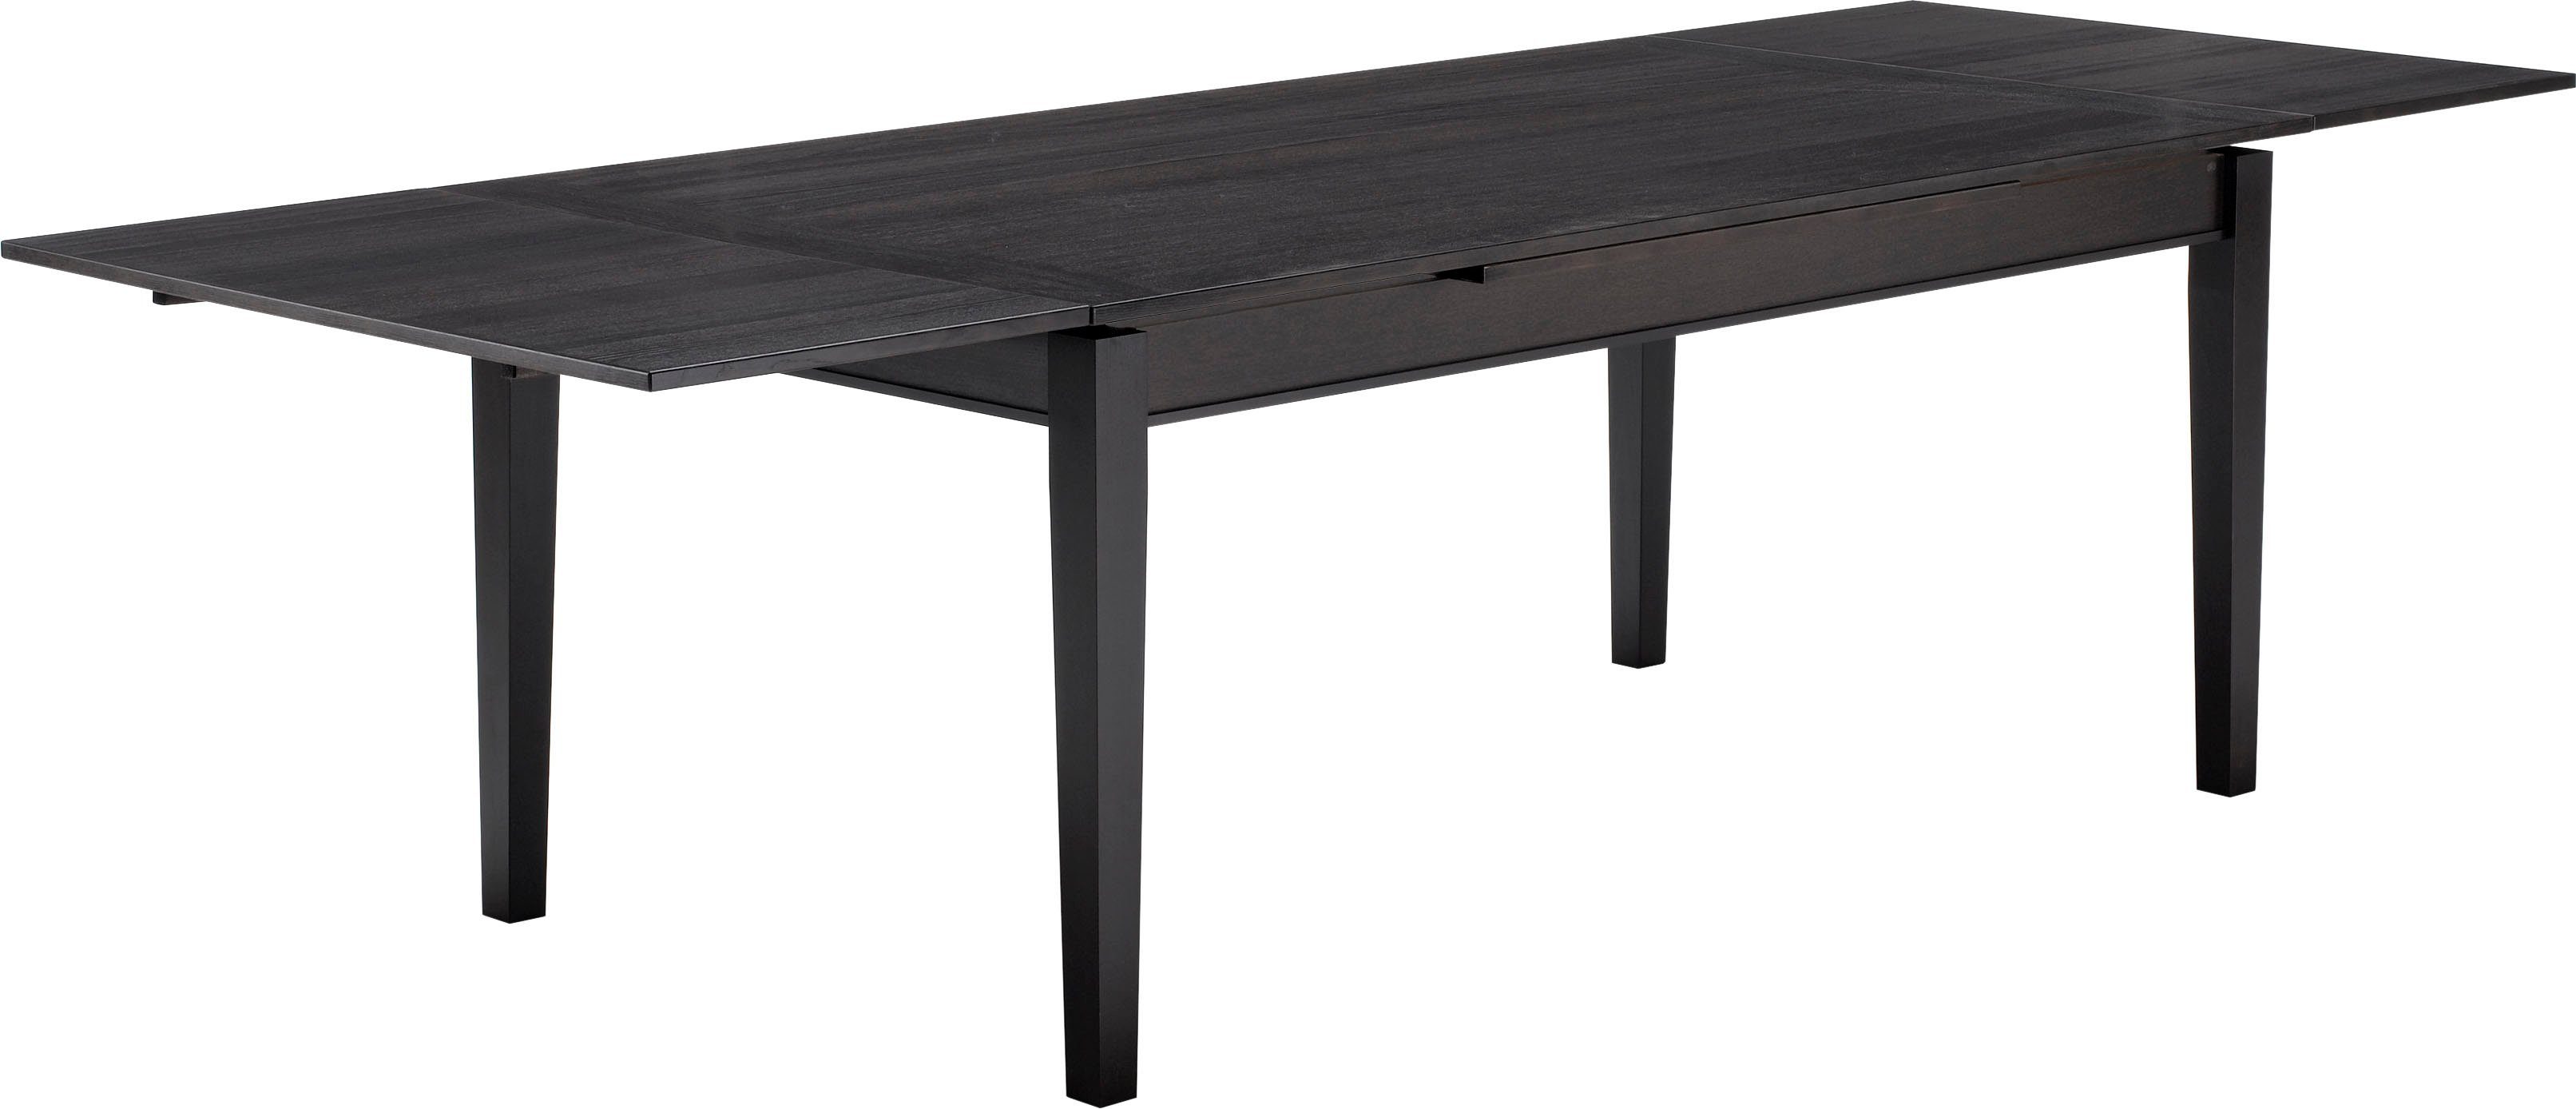 in cm, Hammel Tischplatte Massivholz Furniture Furnier in Wenge Hammel Esstisch by 180(280)x100 Basic Gestell und Sami,